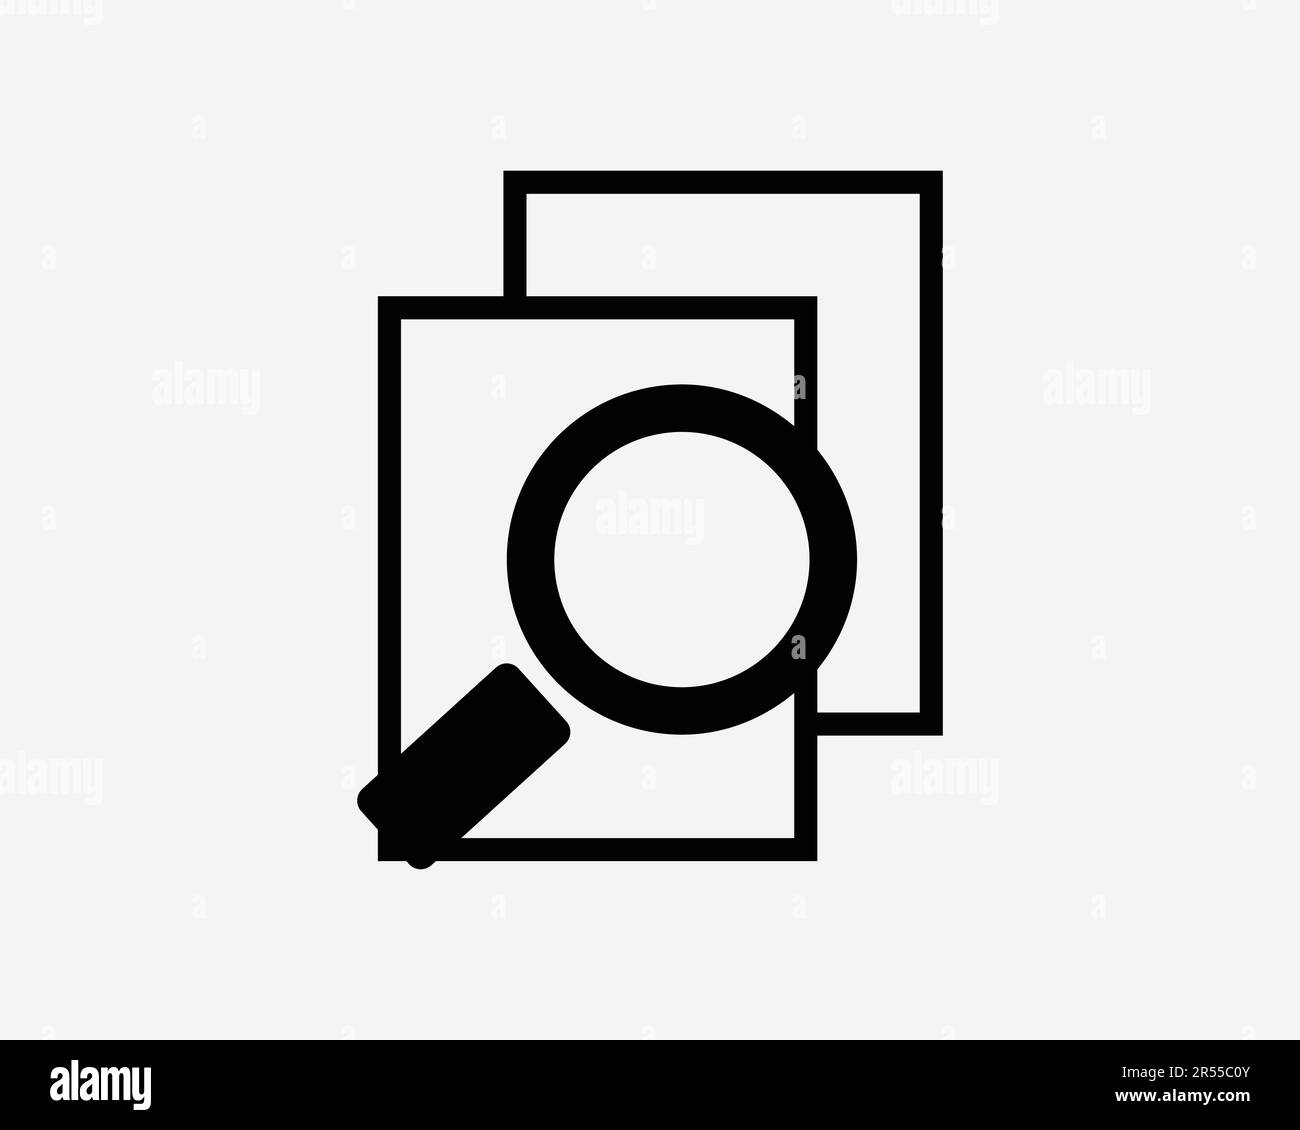 Symbol für Dateisuche Vergrößern von Forschungsdokumenten Vergrößerung Glass Berichtsordner Suchen Symbol anzeigen Schwarze Grafik Illustration Clipart EPS Vecto Stock Vektor